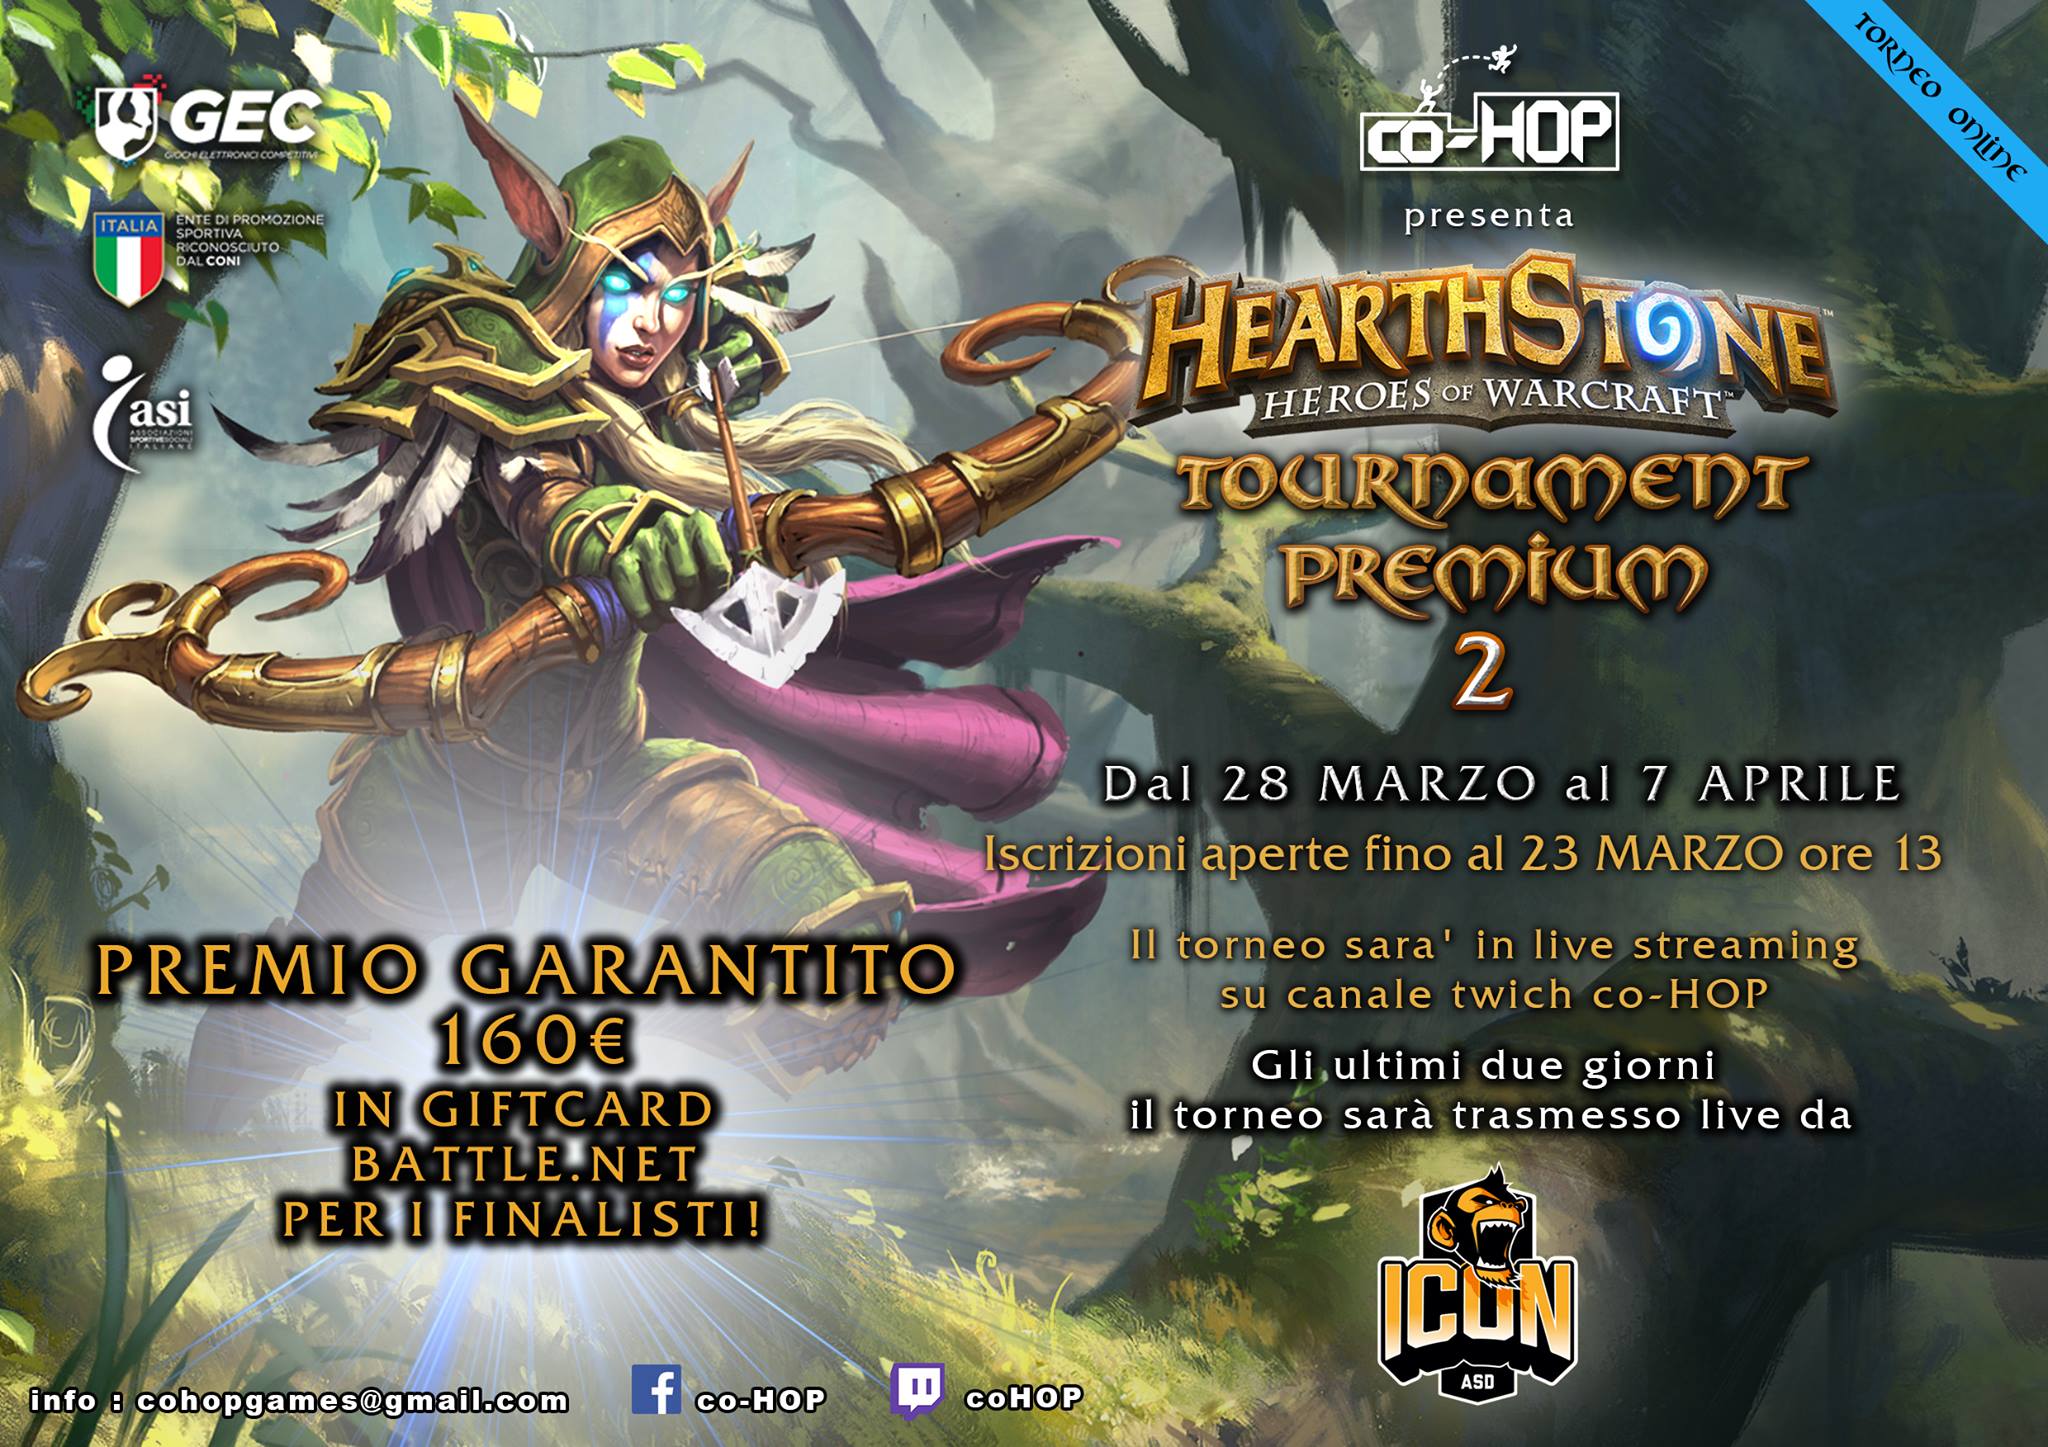 Hearthstone Tournament Premium 2: da domani al via la diretta!